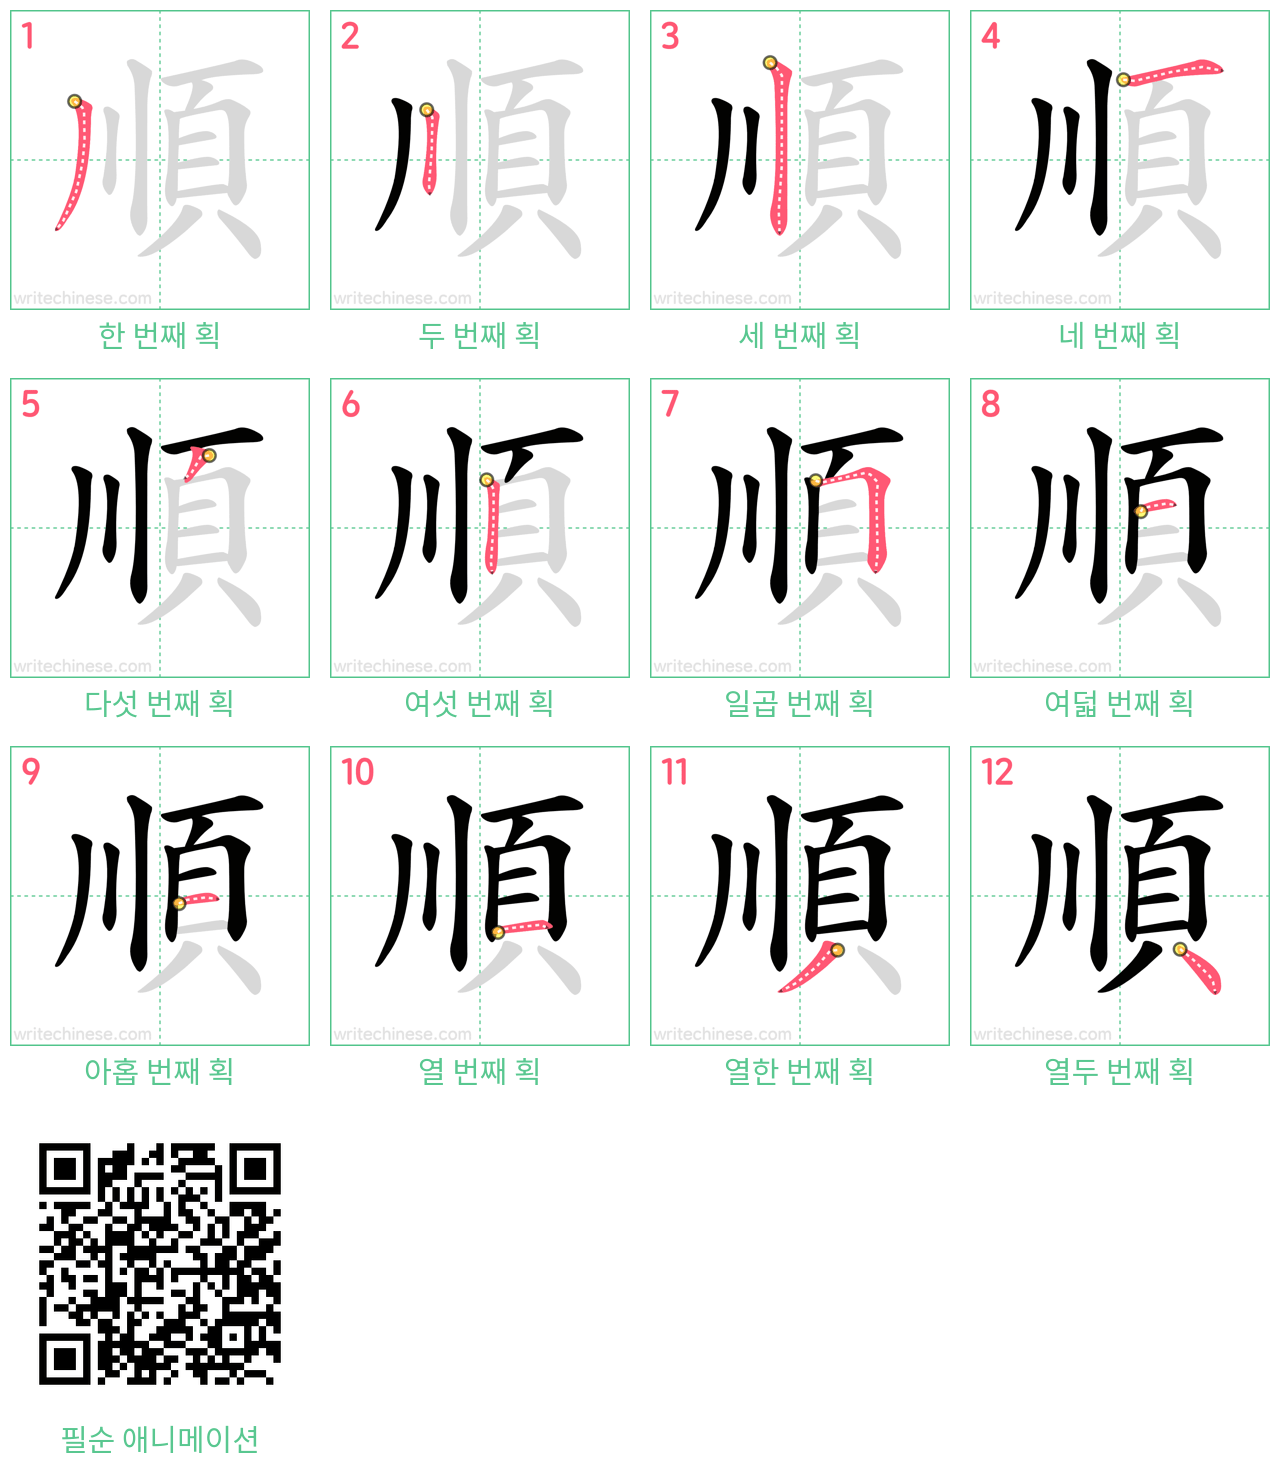 順 step-by-step stroke order diagrams